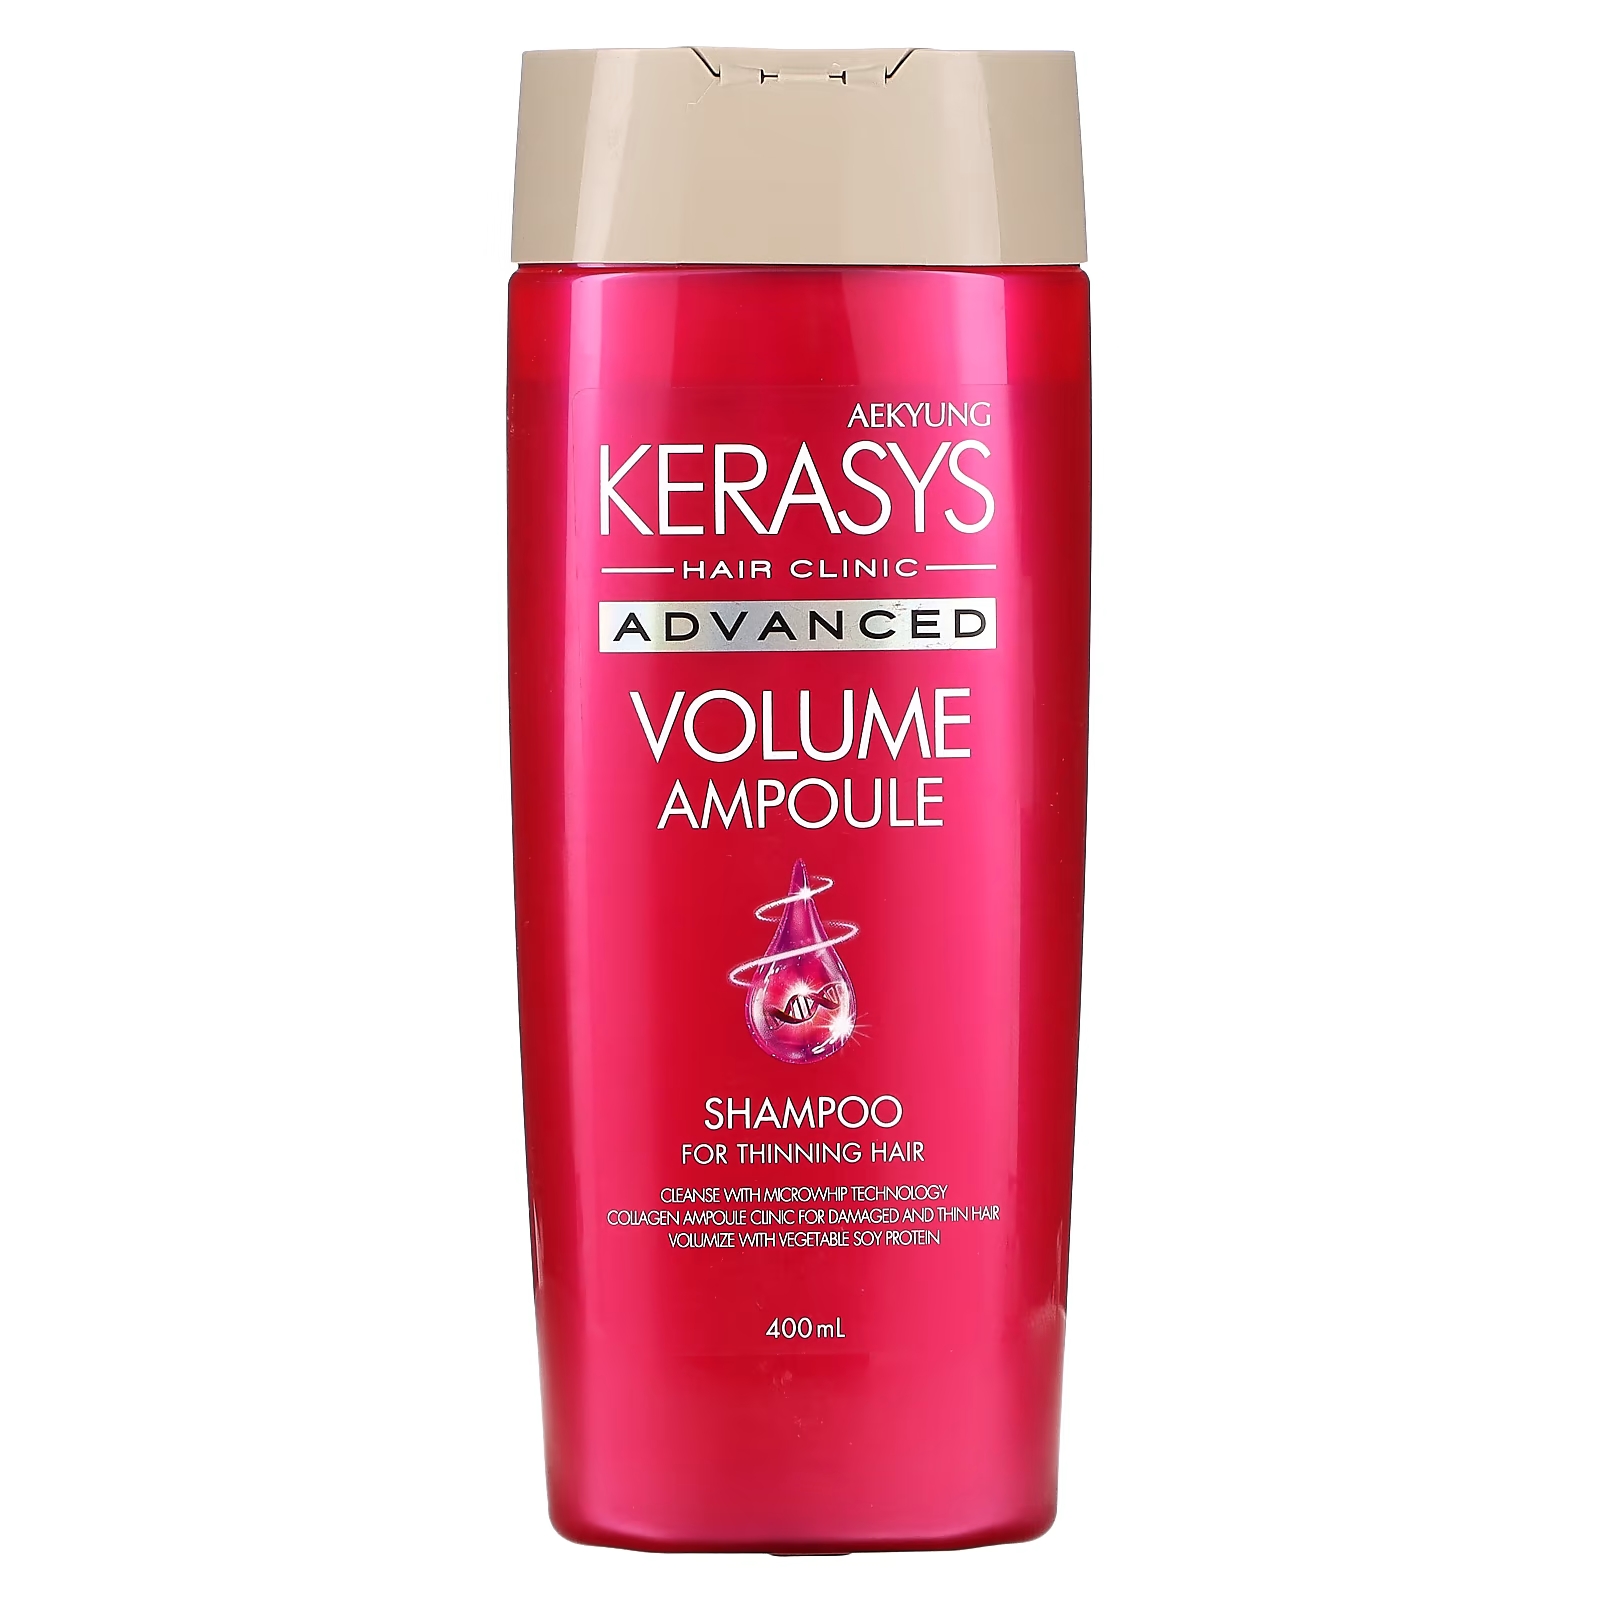 Шампунь Kerasys Advanced Volume Ampoule для редеющих волос, 400 мл kerasys advanced volume ampoule shampoo refill